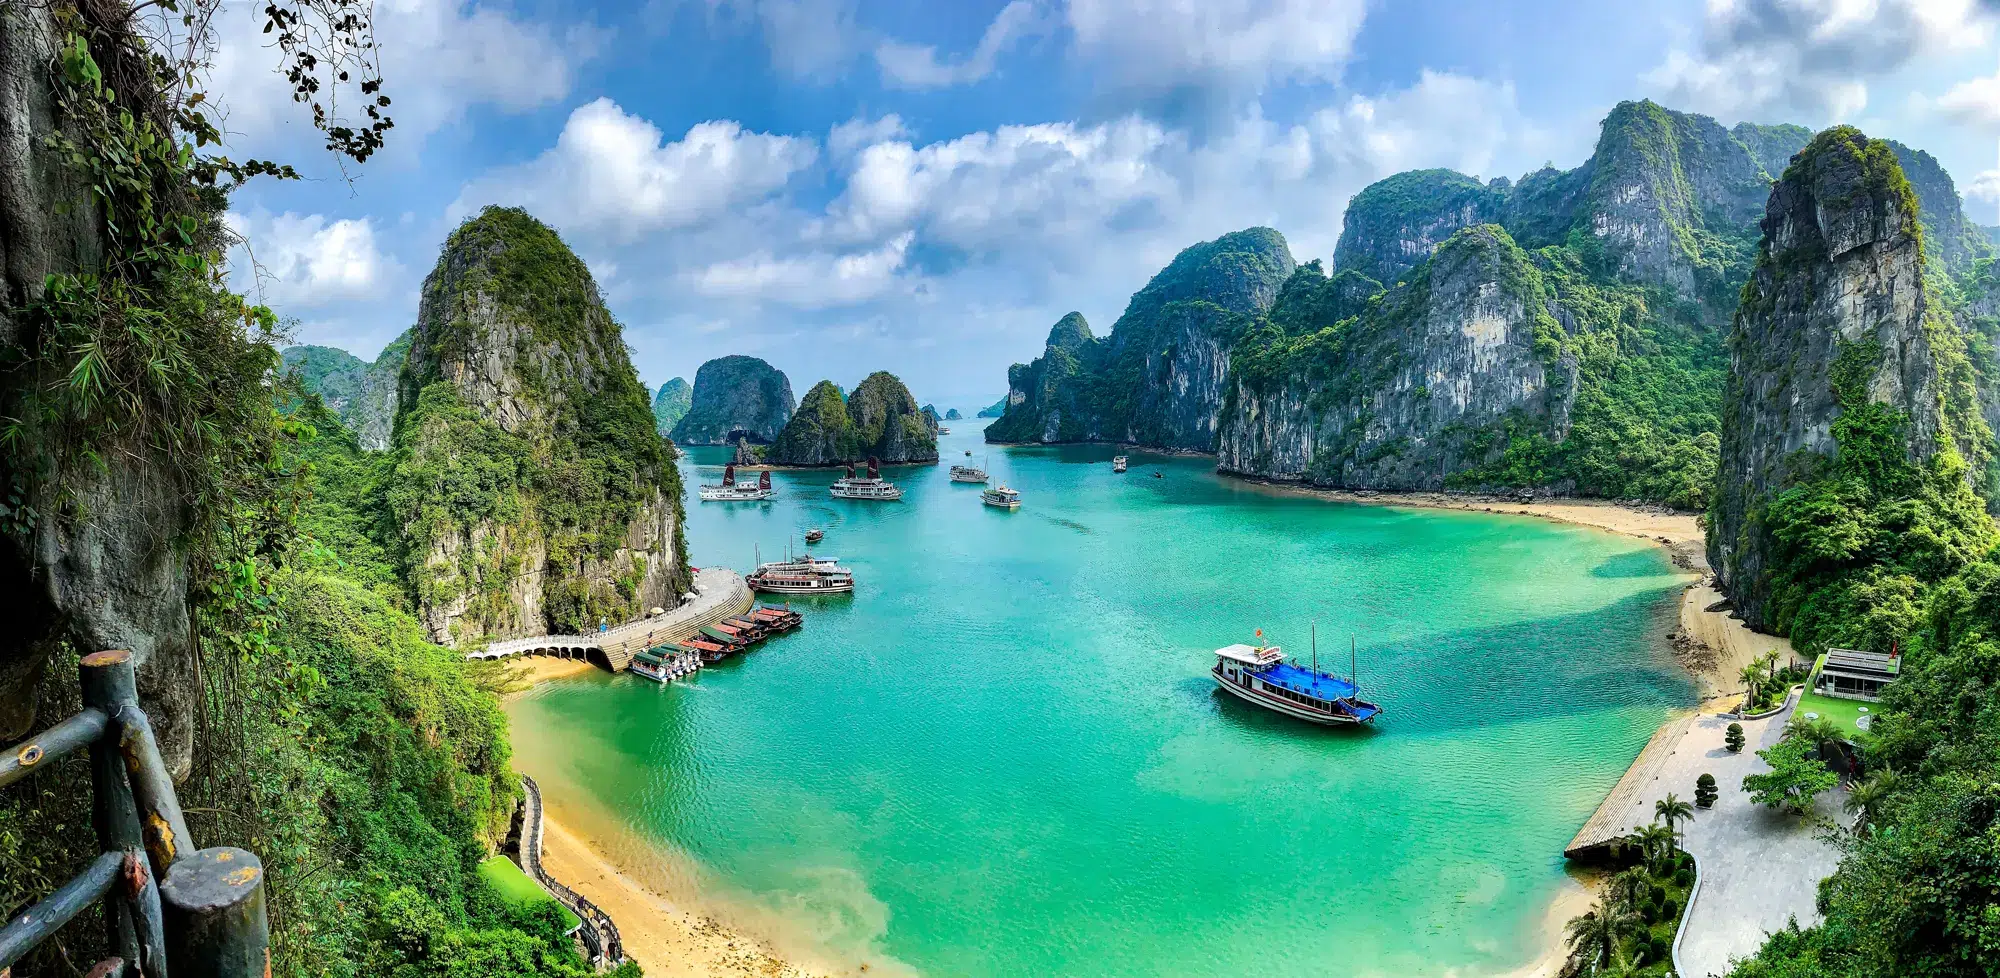 Noord-Vietnam - Ha Long Bay